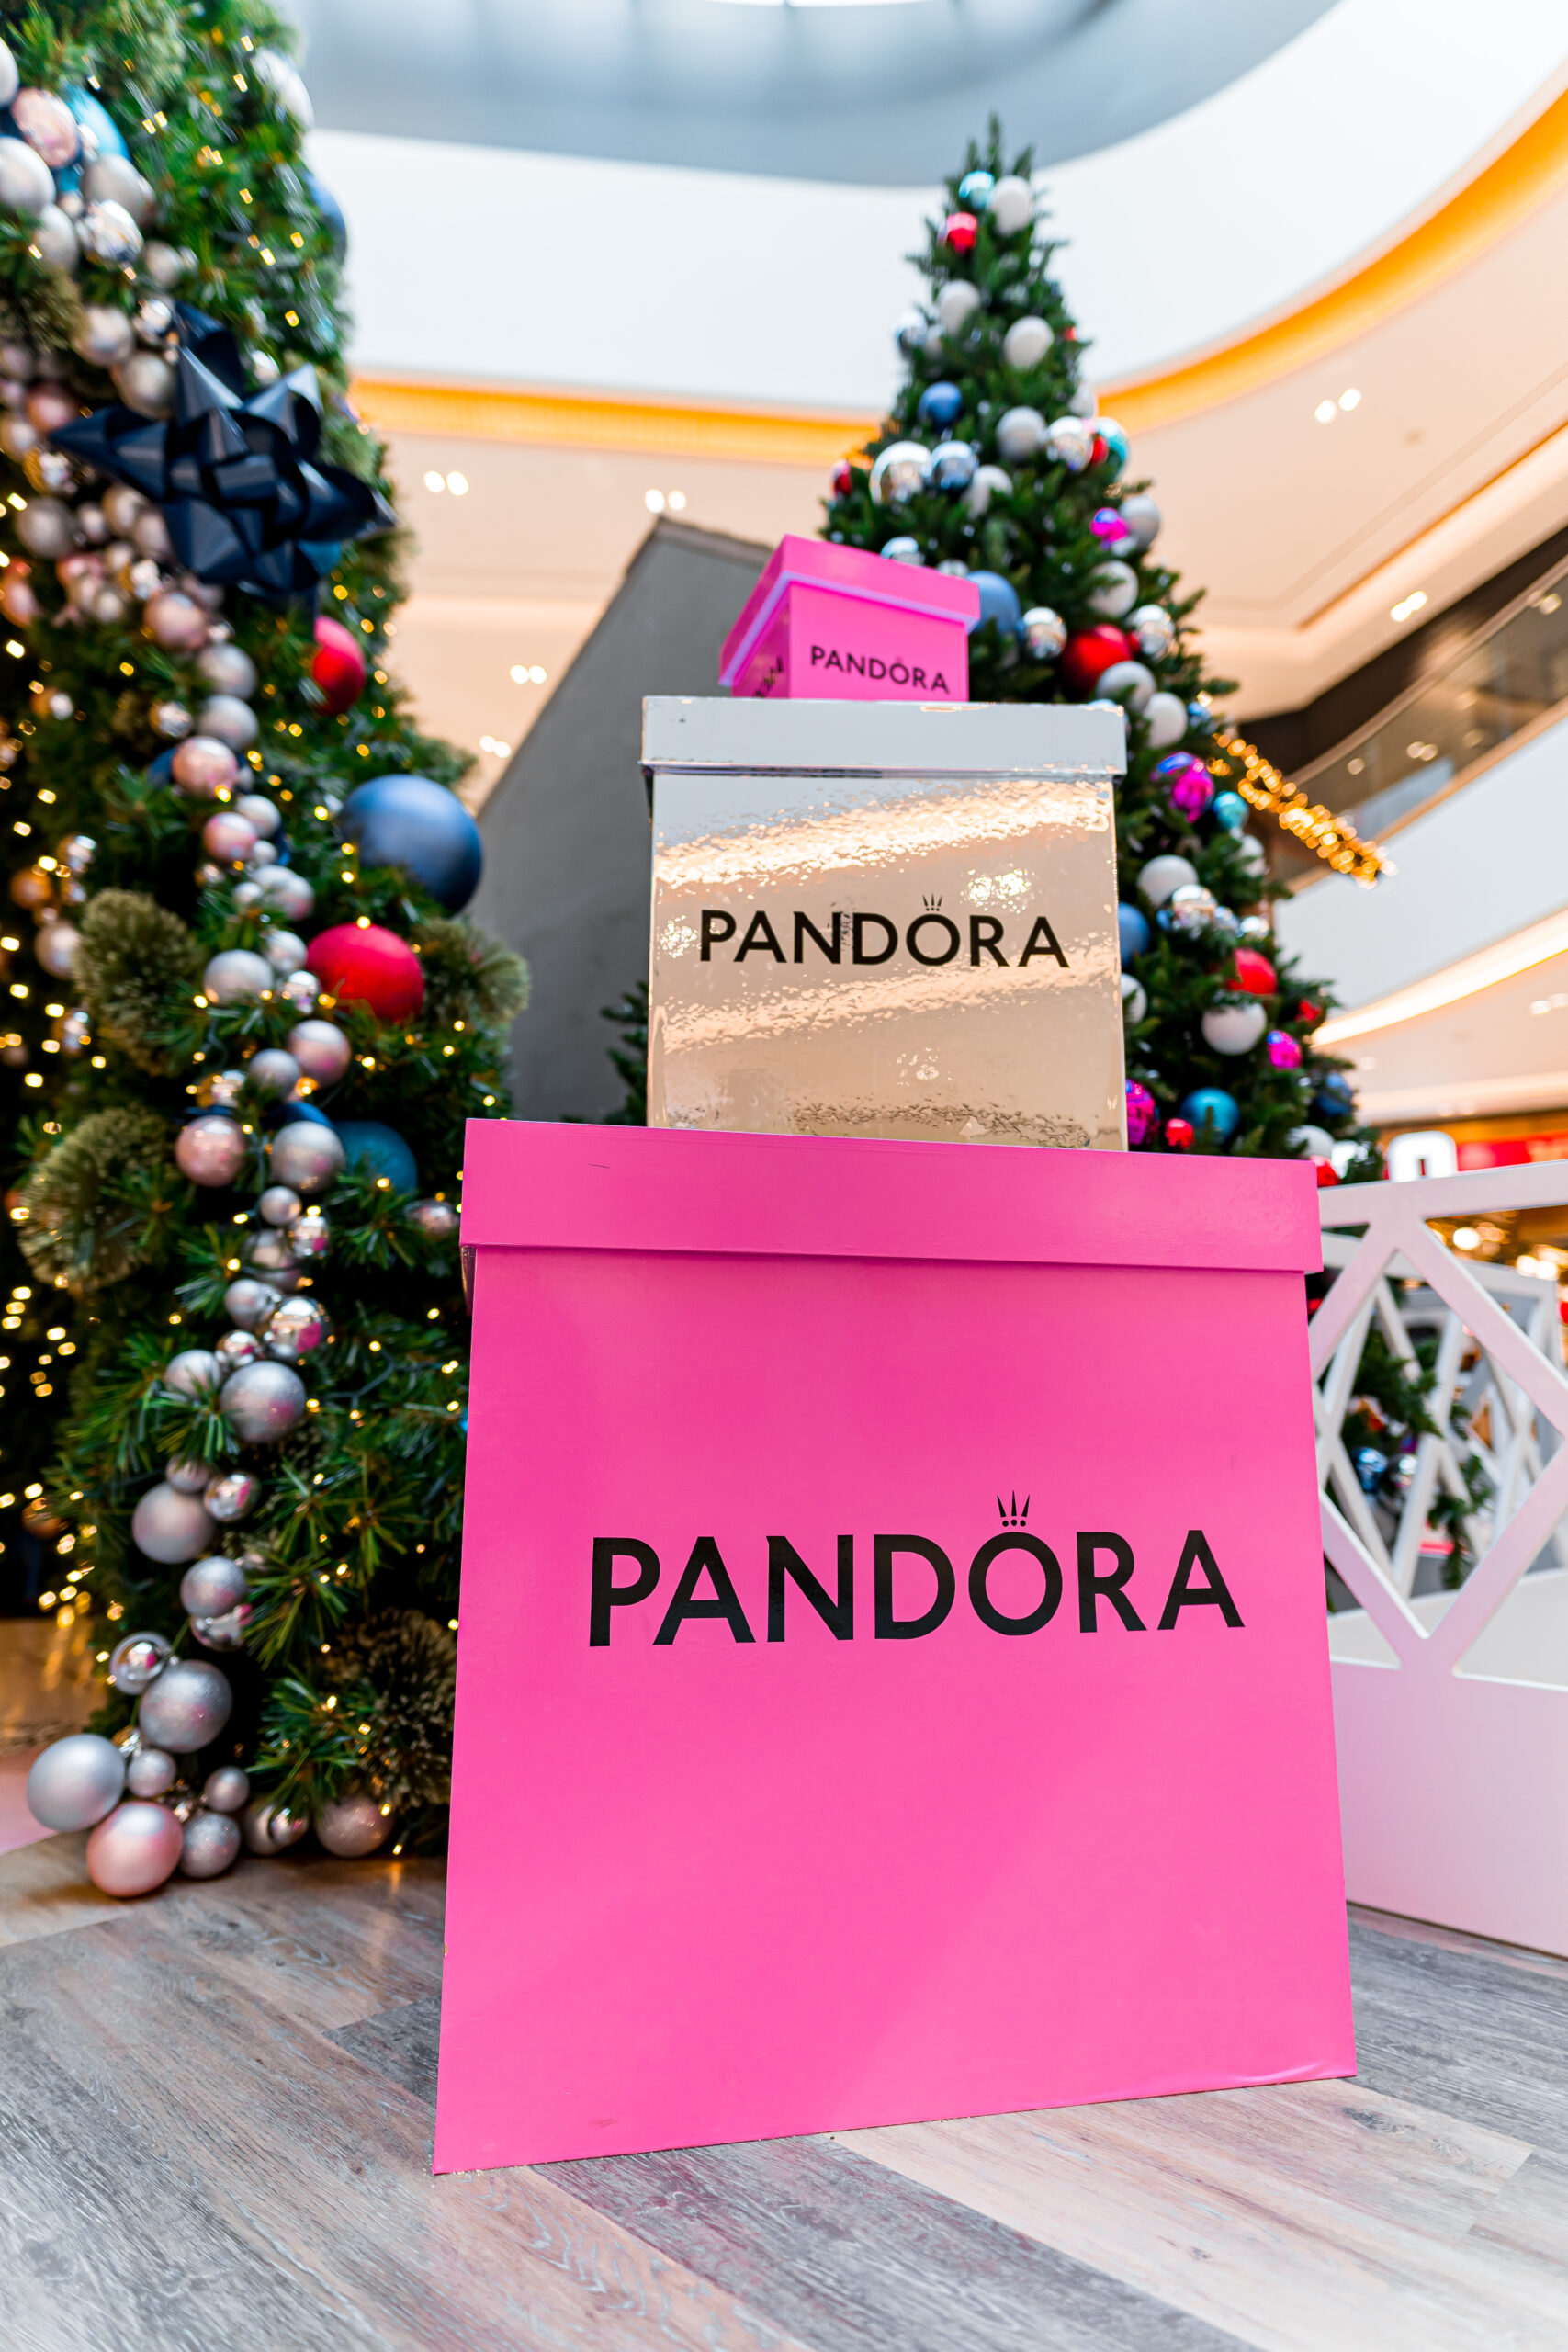 Pandora Holiday sponsorship